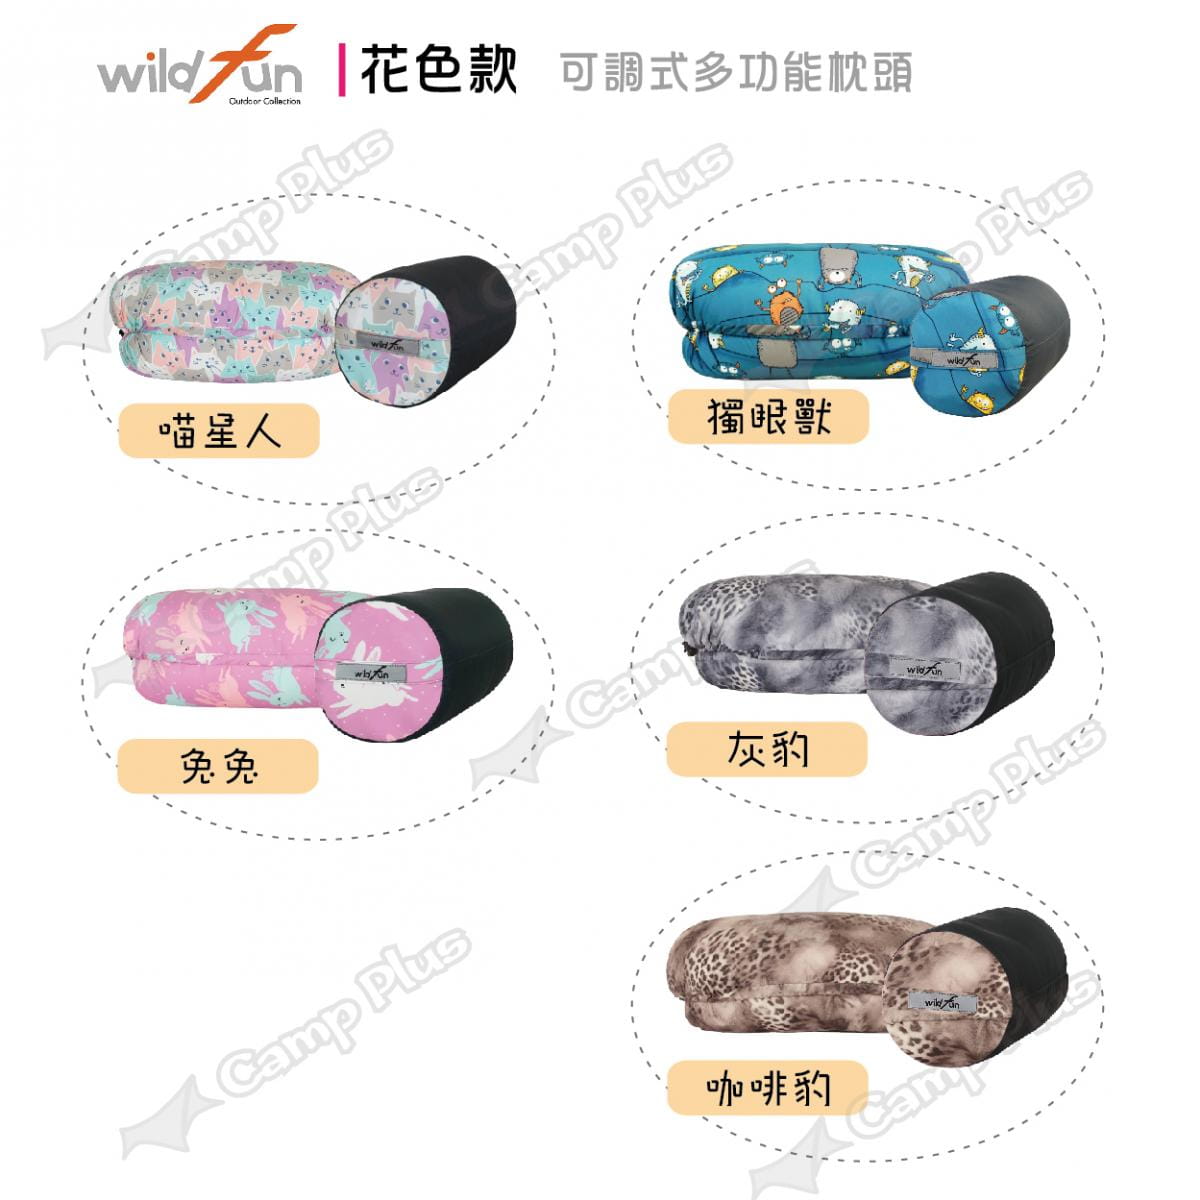 【wildfun野放】專利可調式功能枕頭 (悠遊戶外) 2